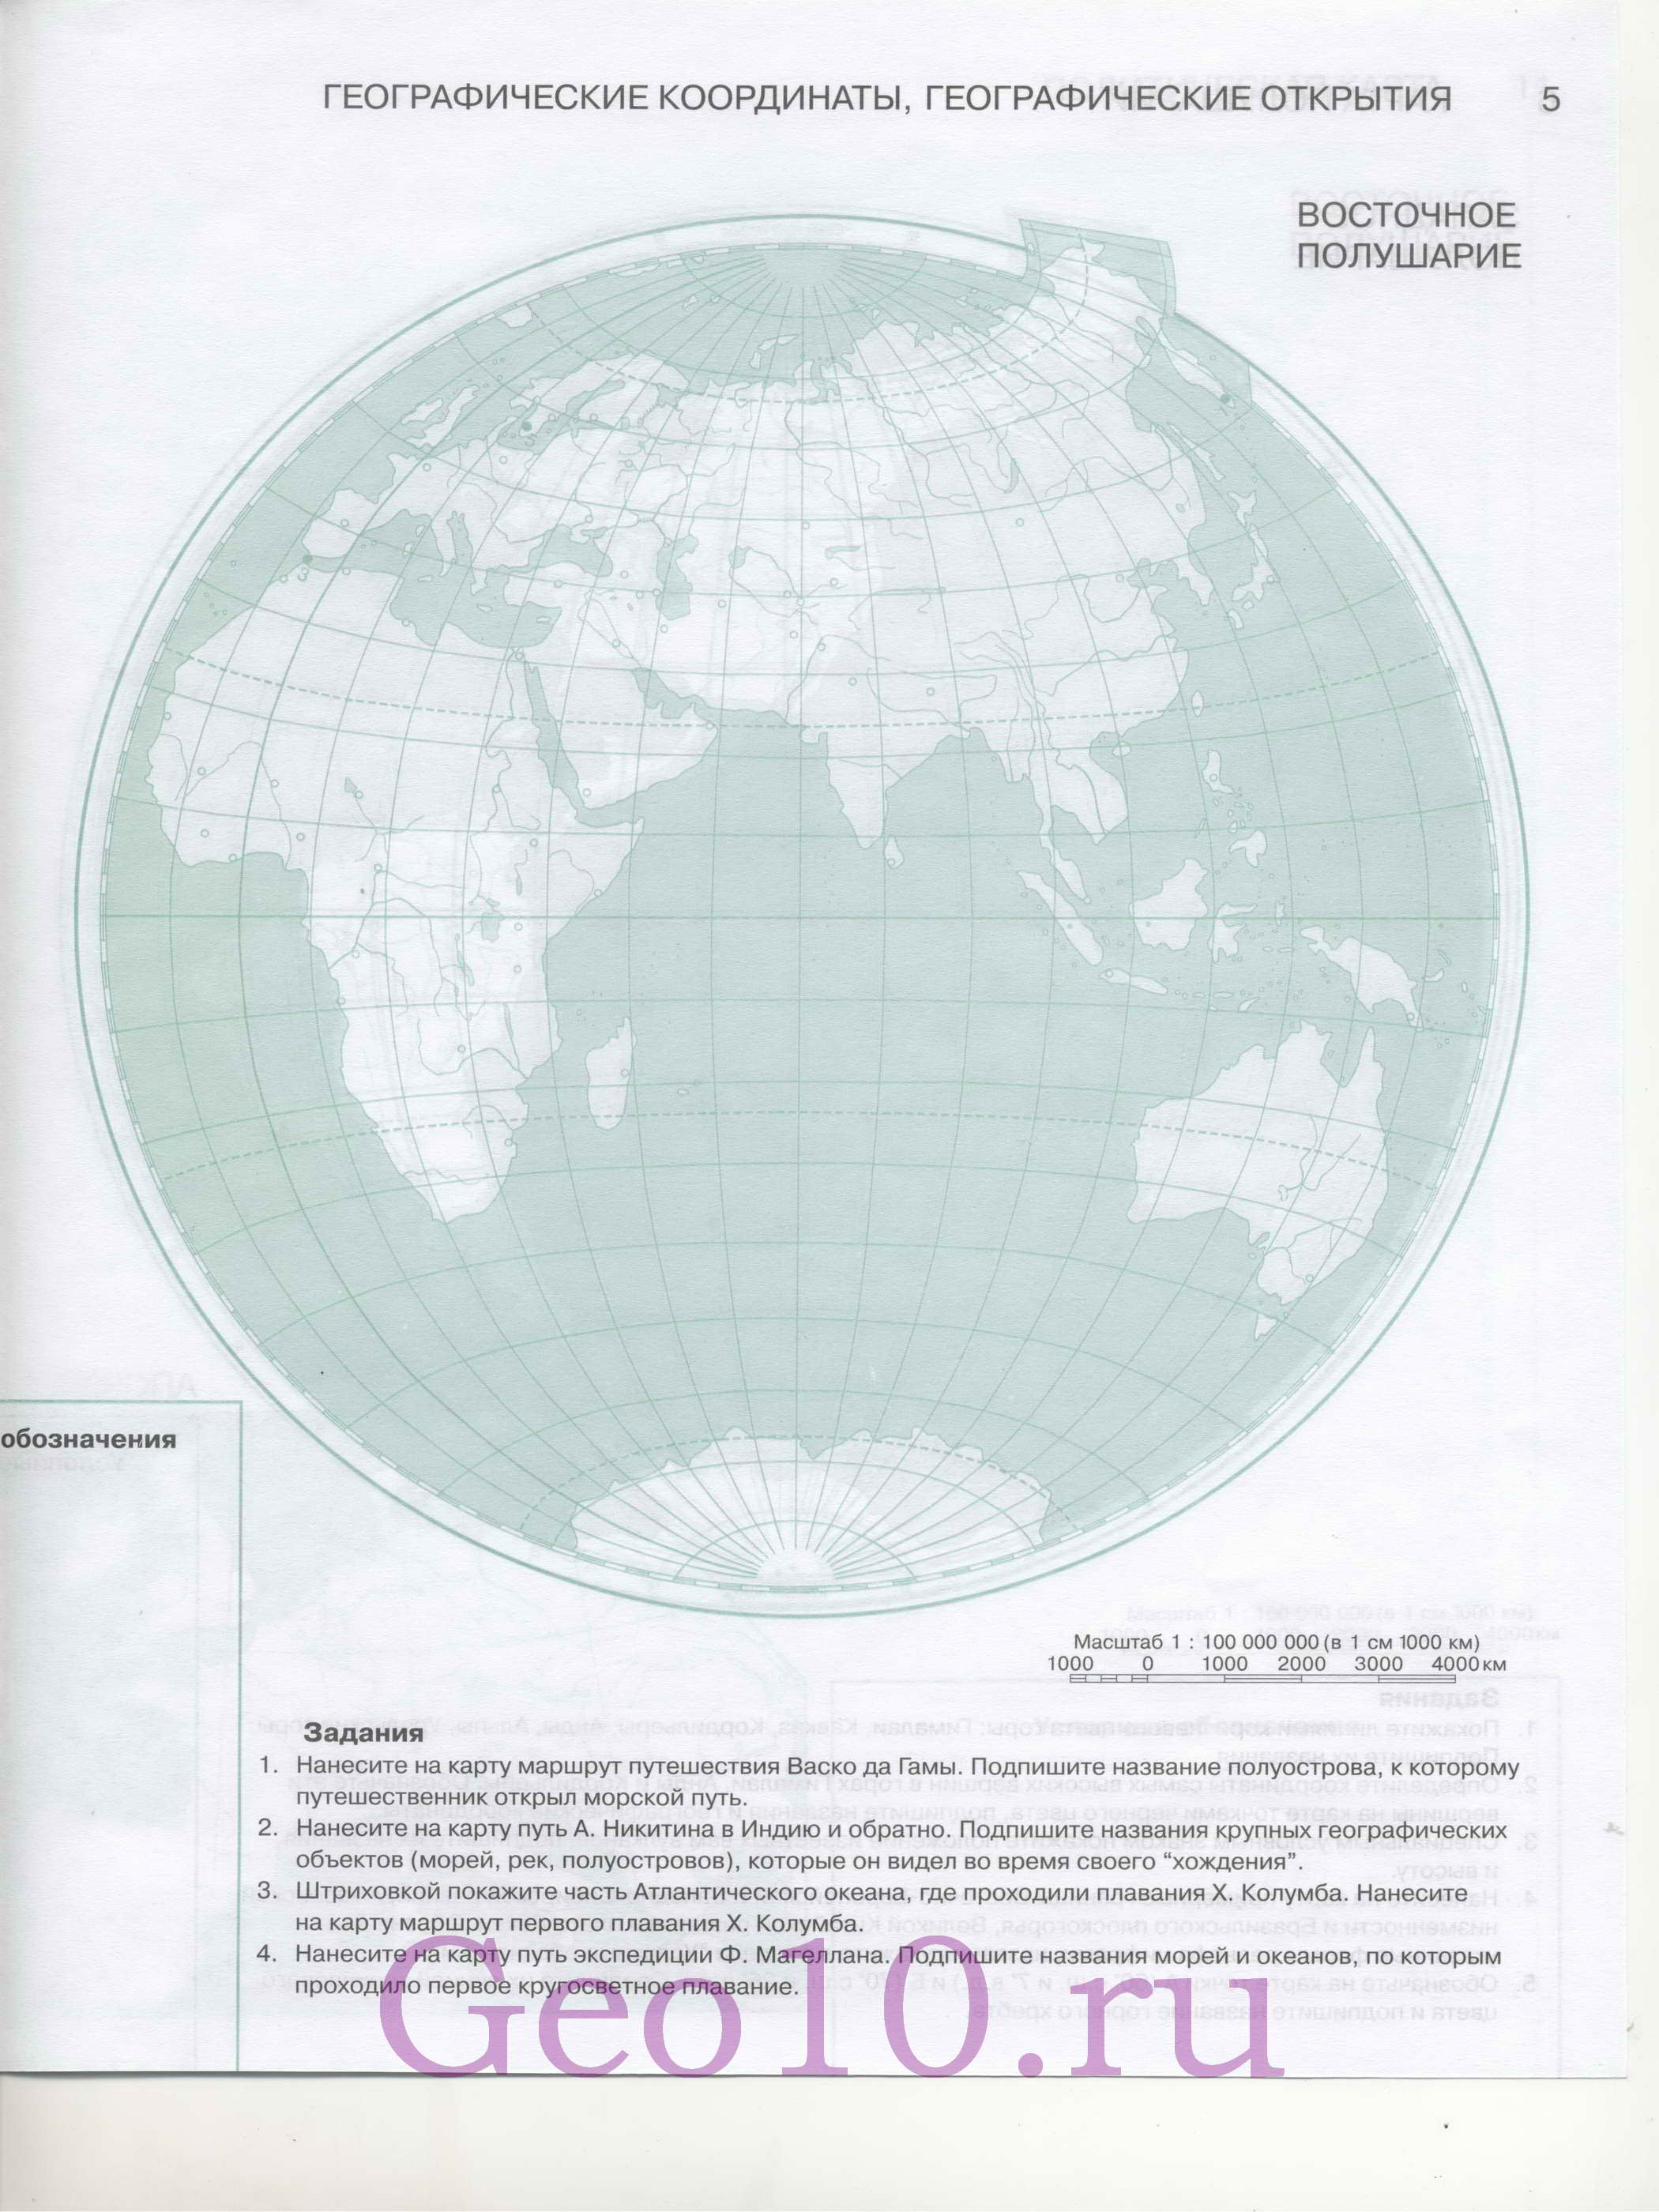 Контурная карта полушарий Земли. Контурная карта западного и восточногополушарий Земли, B0 -